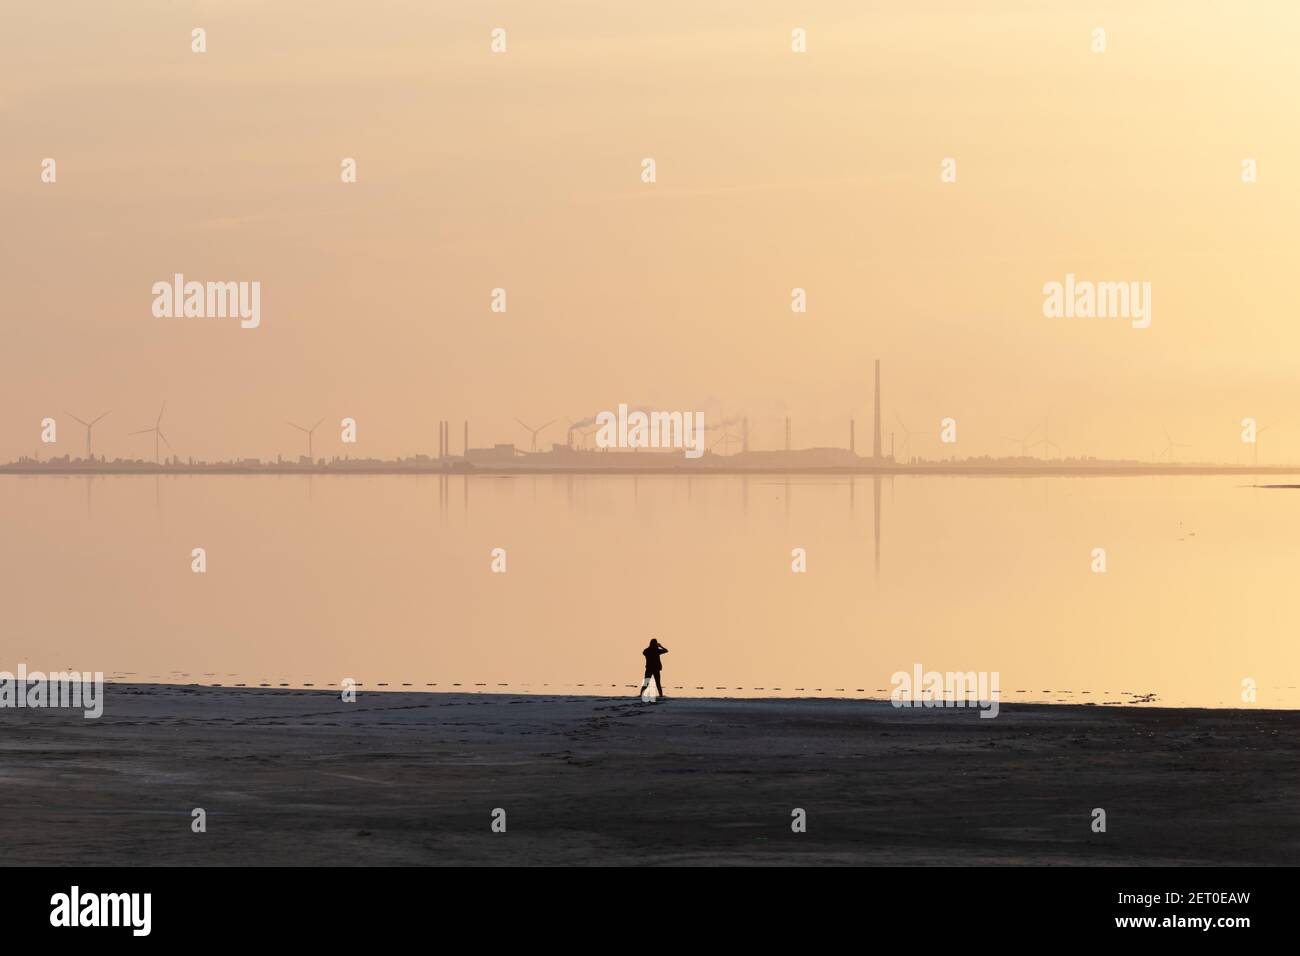 Ruhige minimalistische Landschaft mit einsamen Mädchen auf ruhigem Wasser und Industriegebiet mit Fabriken und Windturbinen im Hintergrund. Minimale Landschaftsfotografie Stockfoto